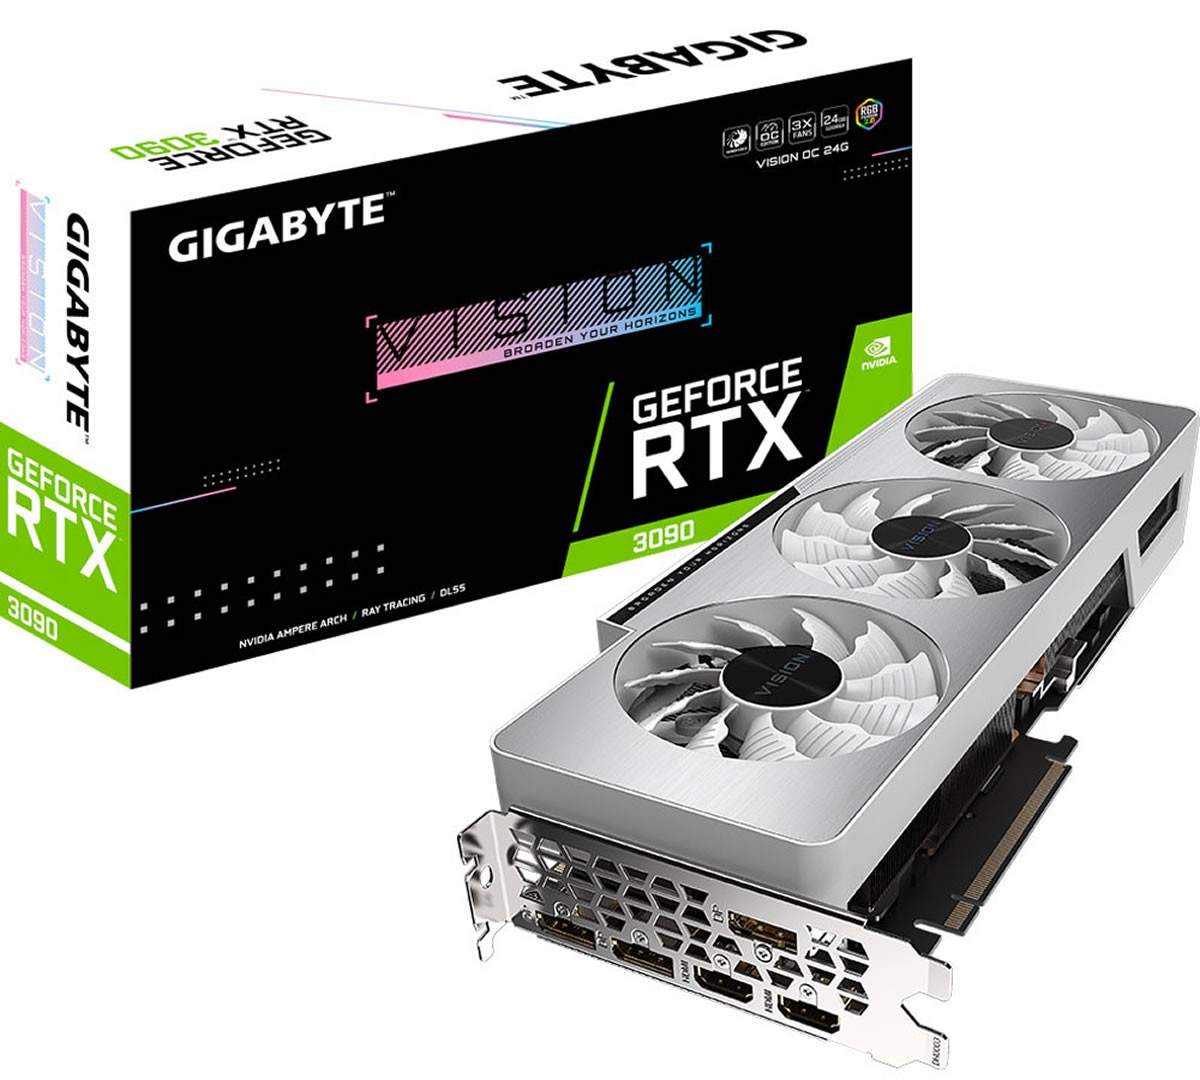 La très belle Gigabyte GeForce RTX 3090 VISION OC disponible à 2329 euros